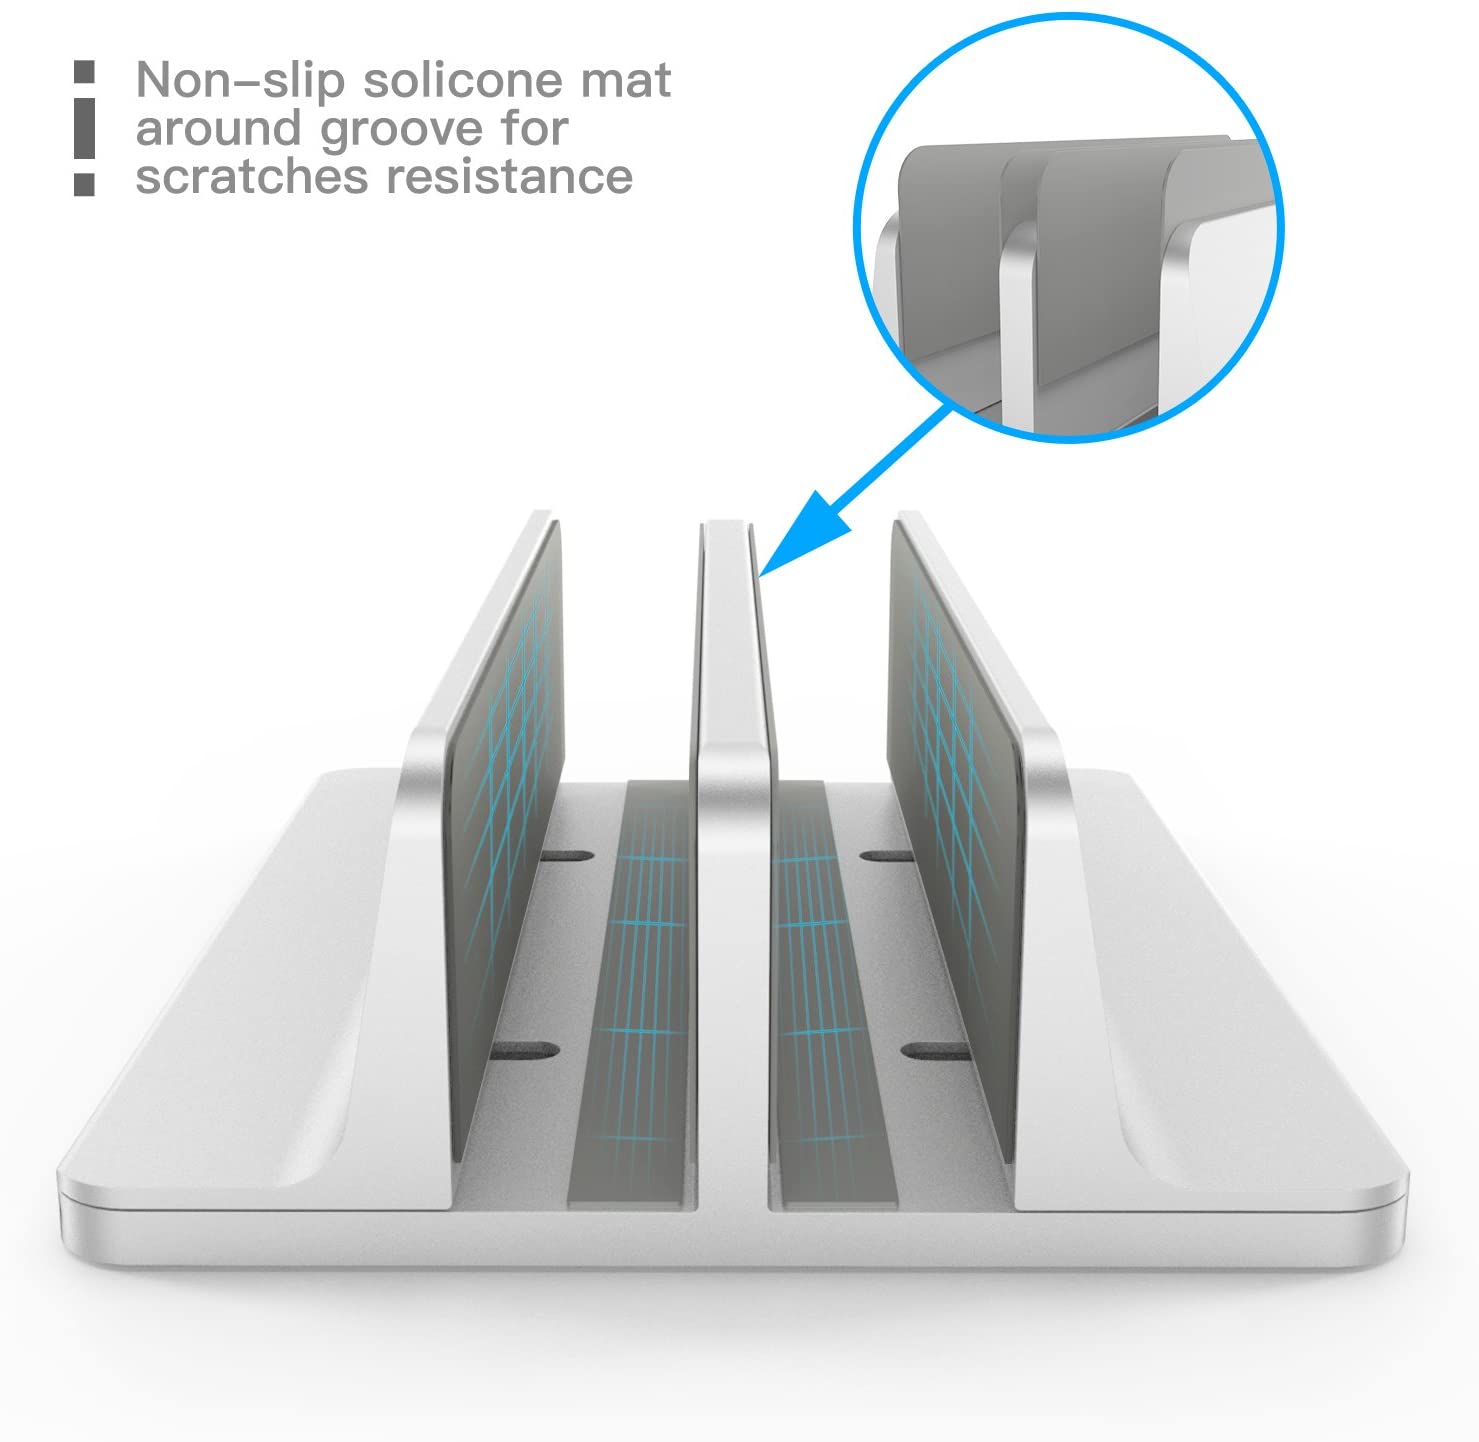 Soporte Vertical Doble para Laptop y Tablet de Aluminio - Ancho